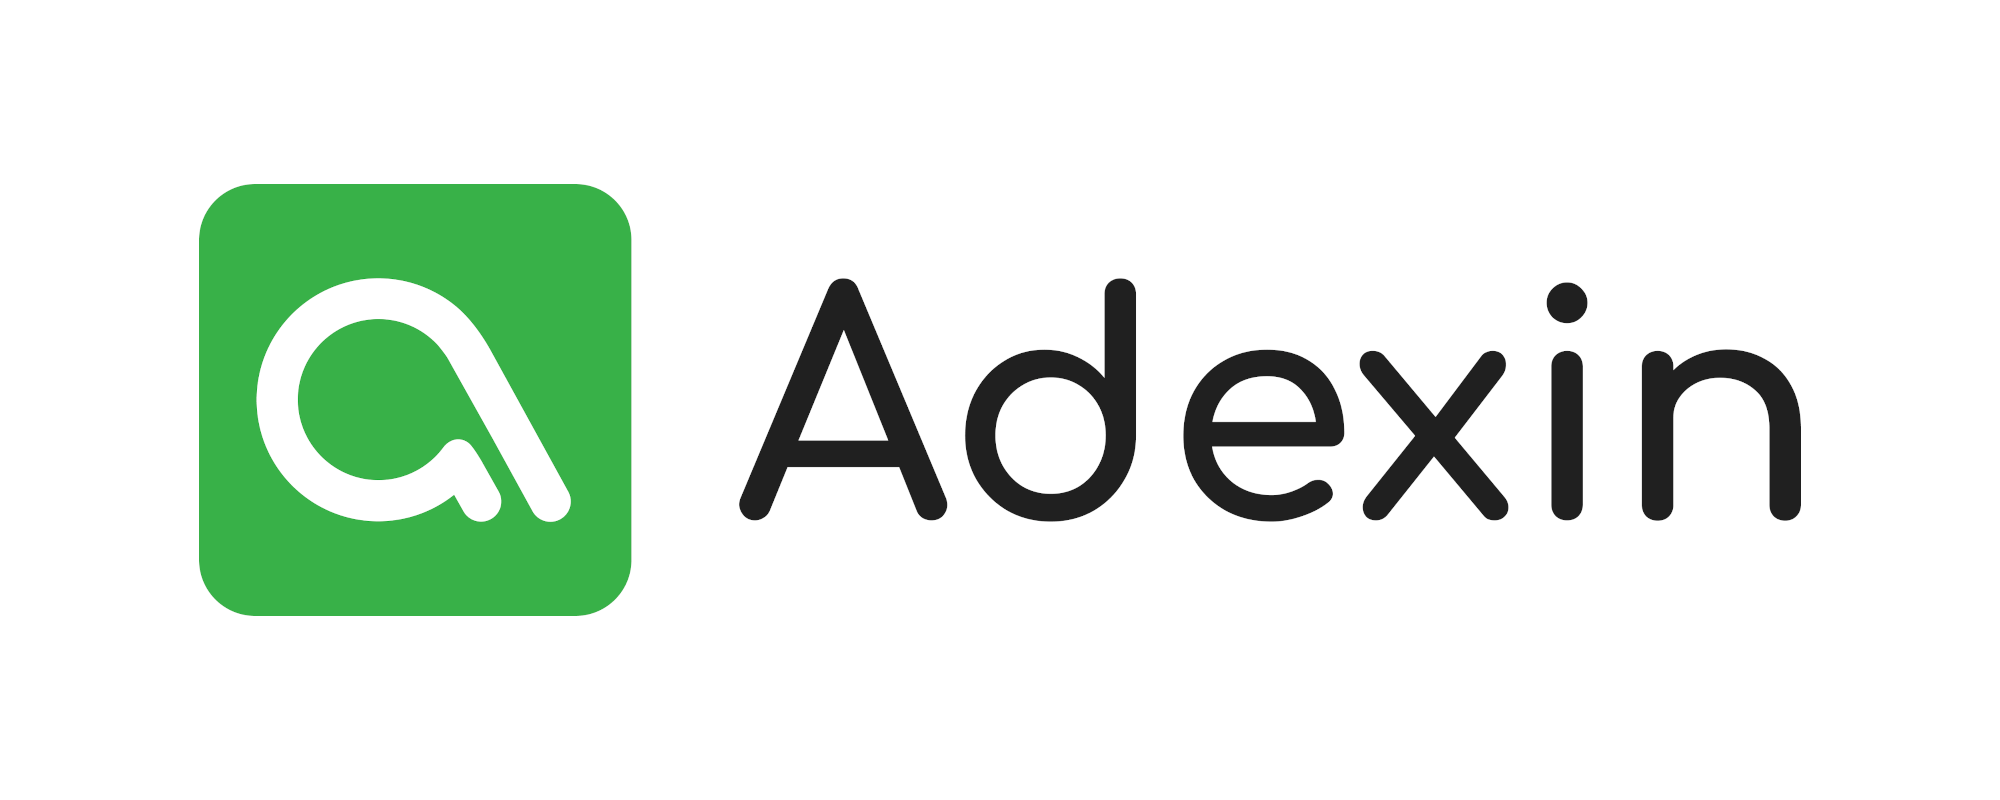 (c) Adexin.com